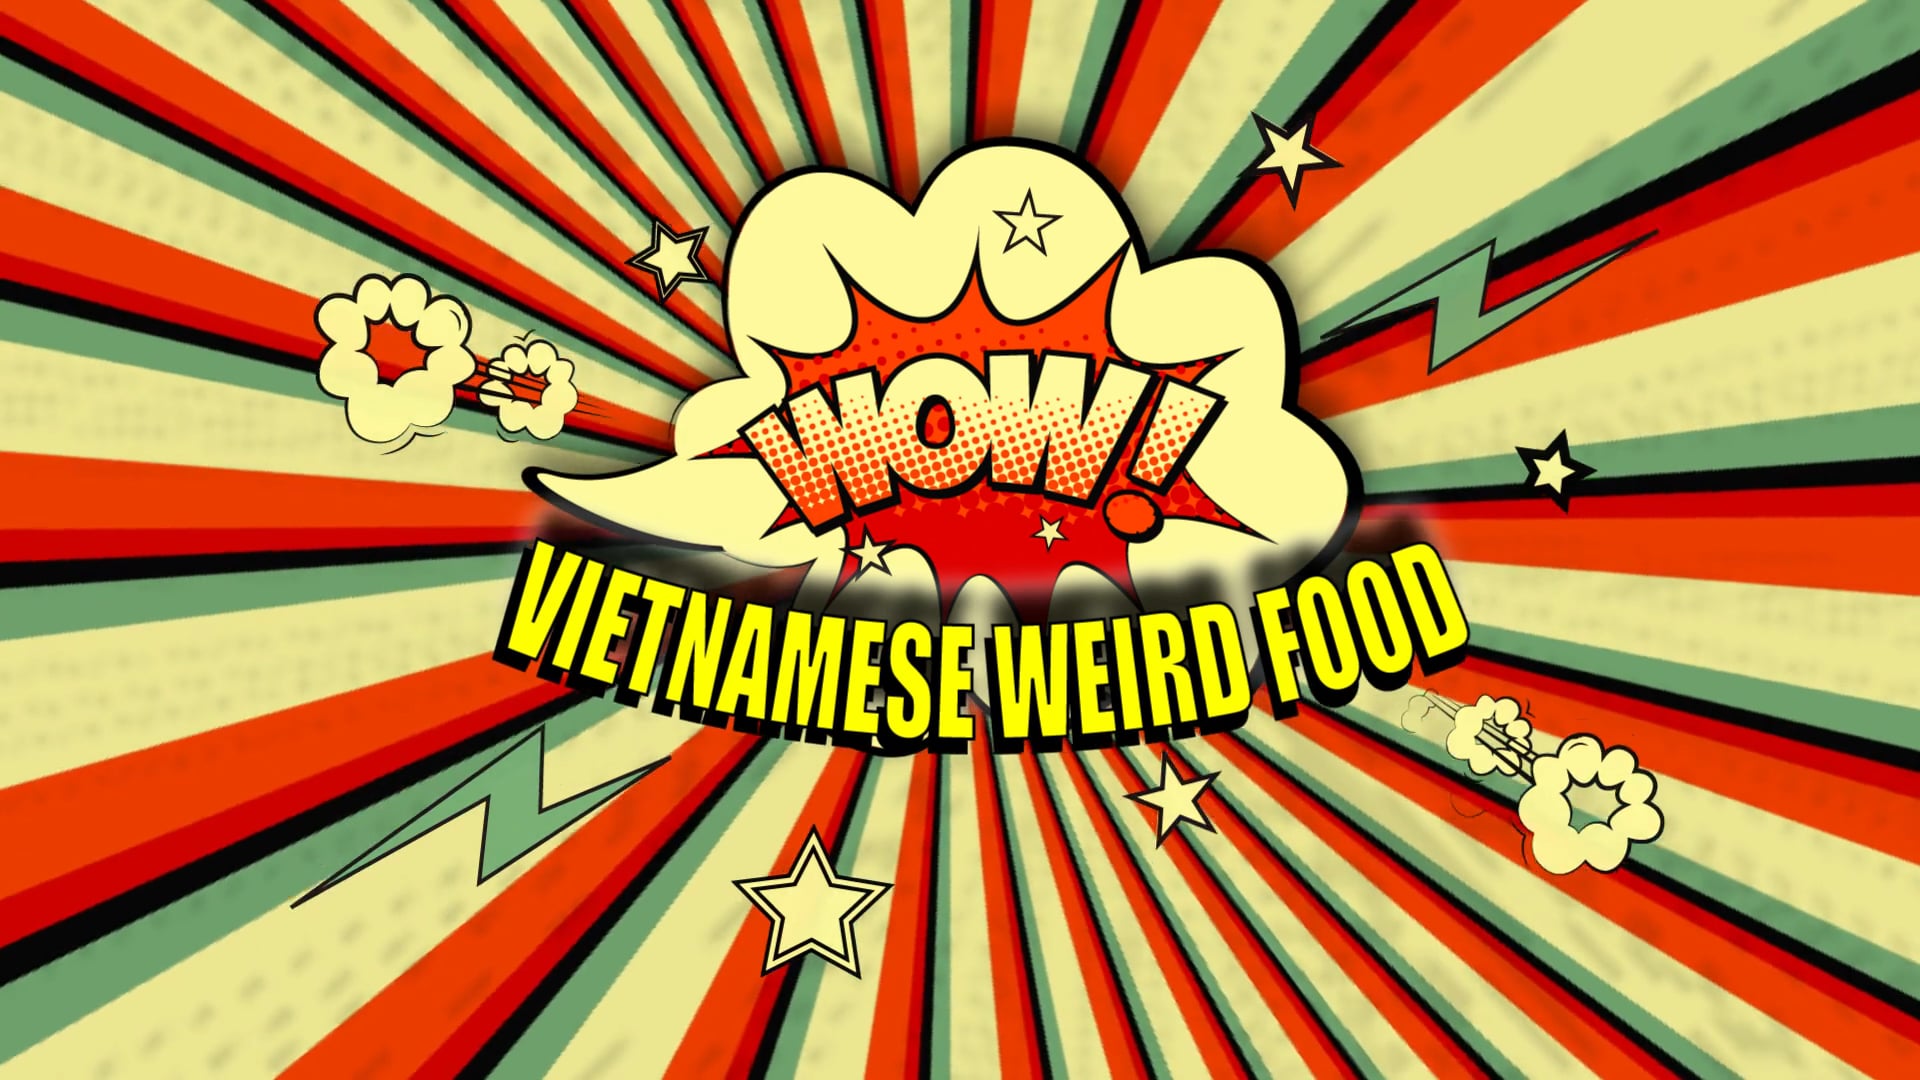 WOW! VIETNAMESE WEIRD FOOD!